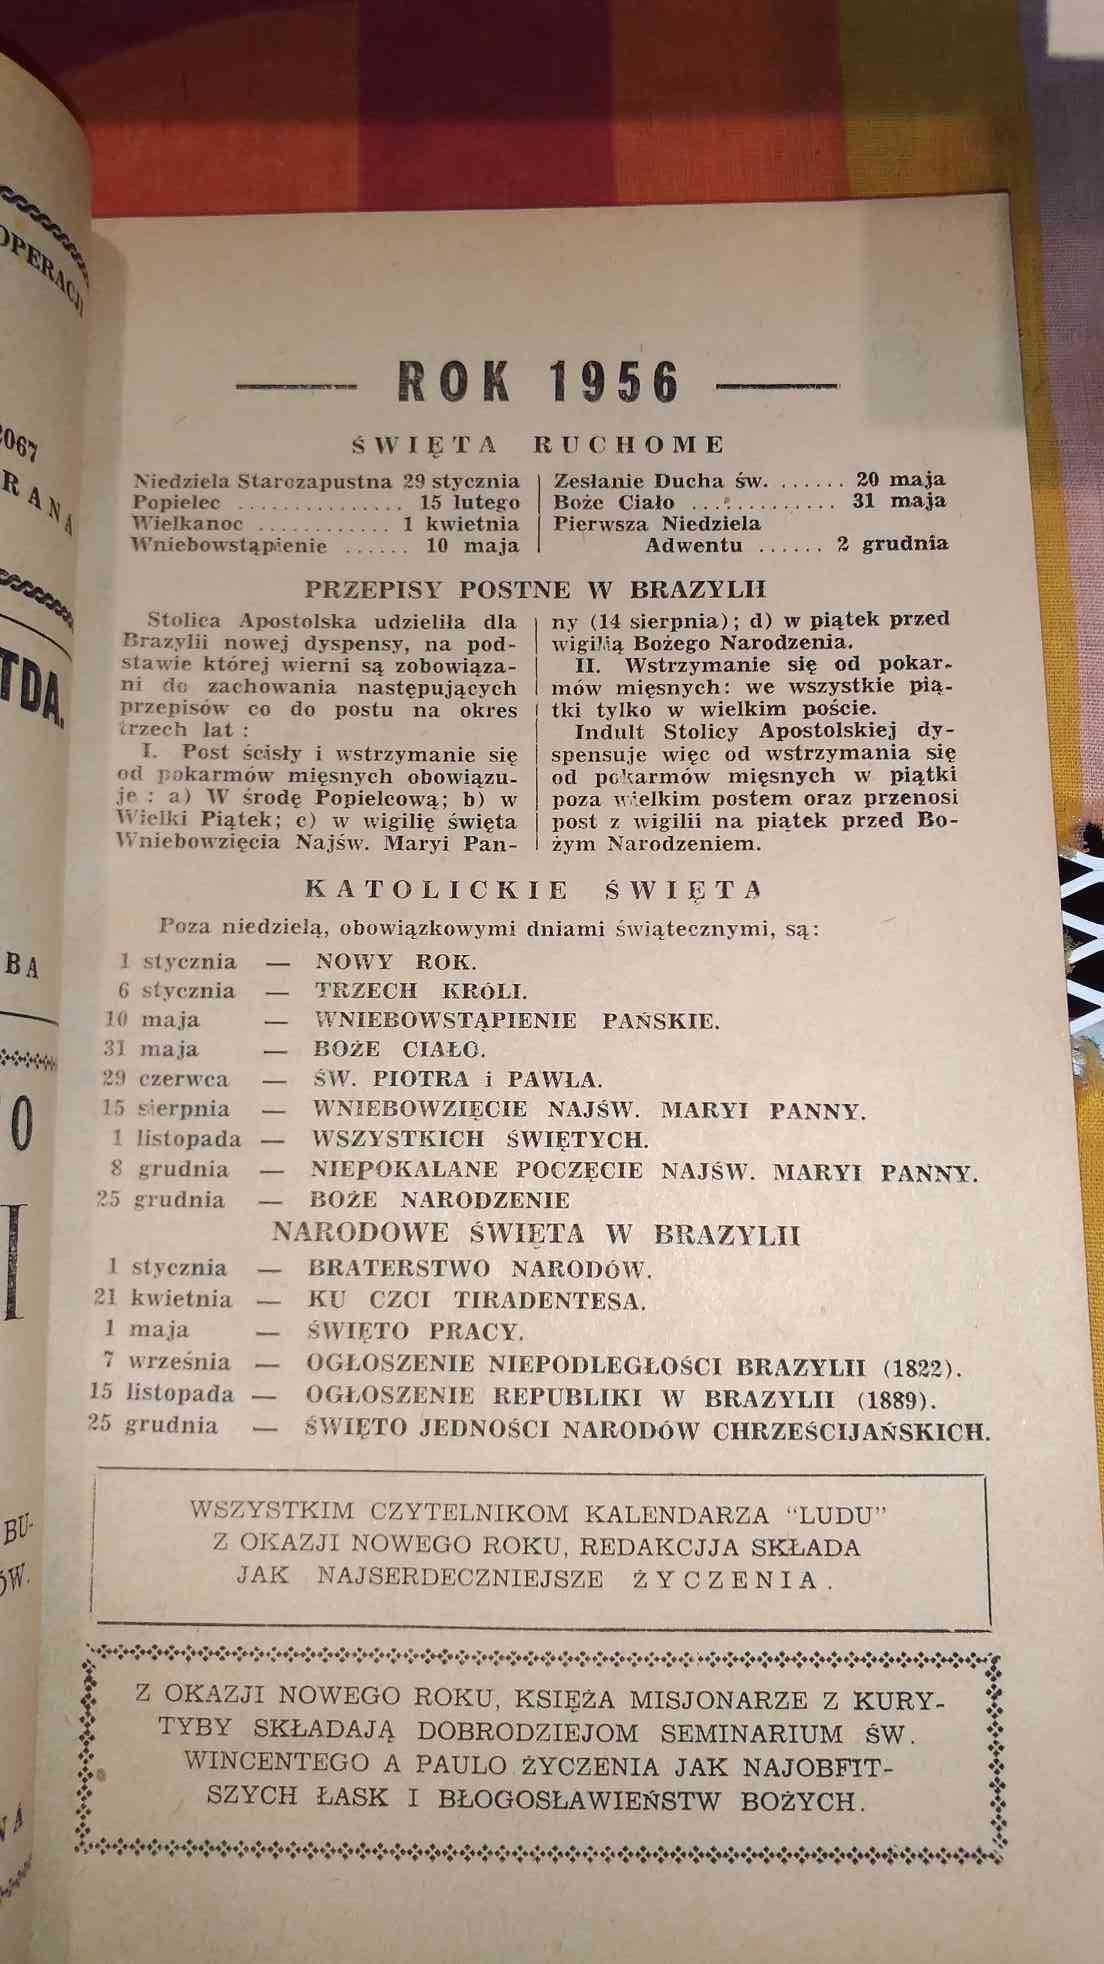 Kalendarz Ludu rok 1956